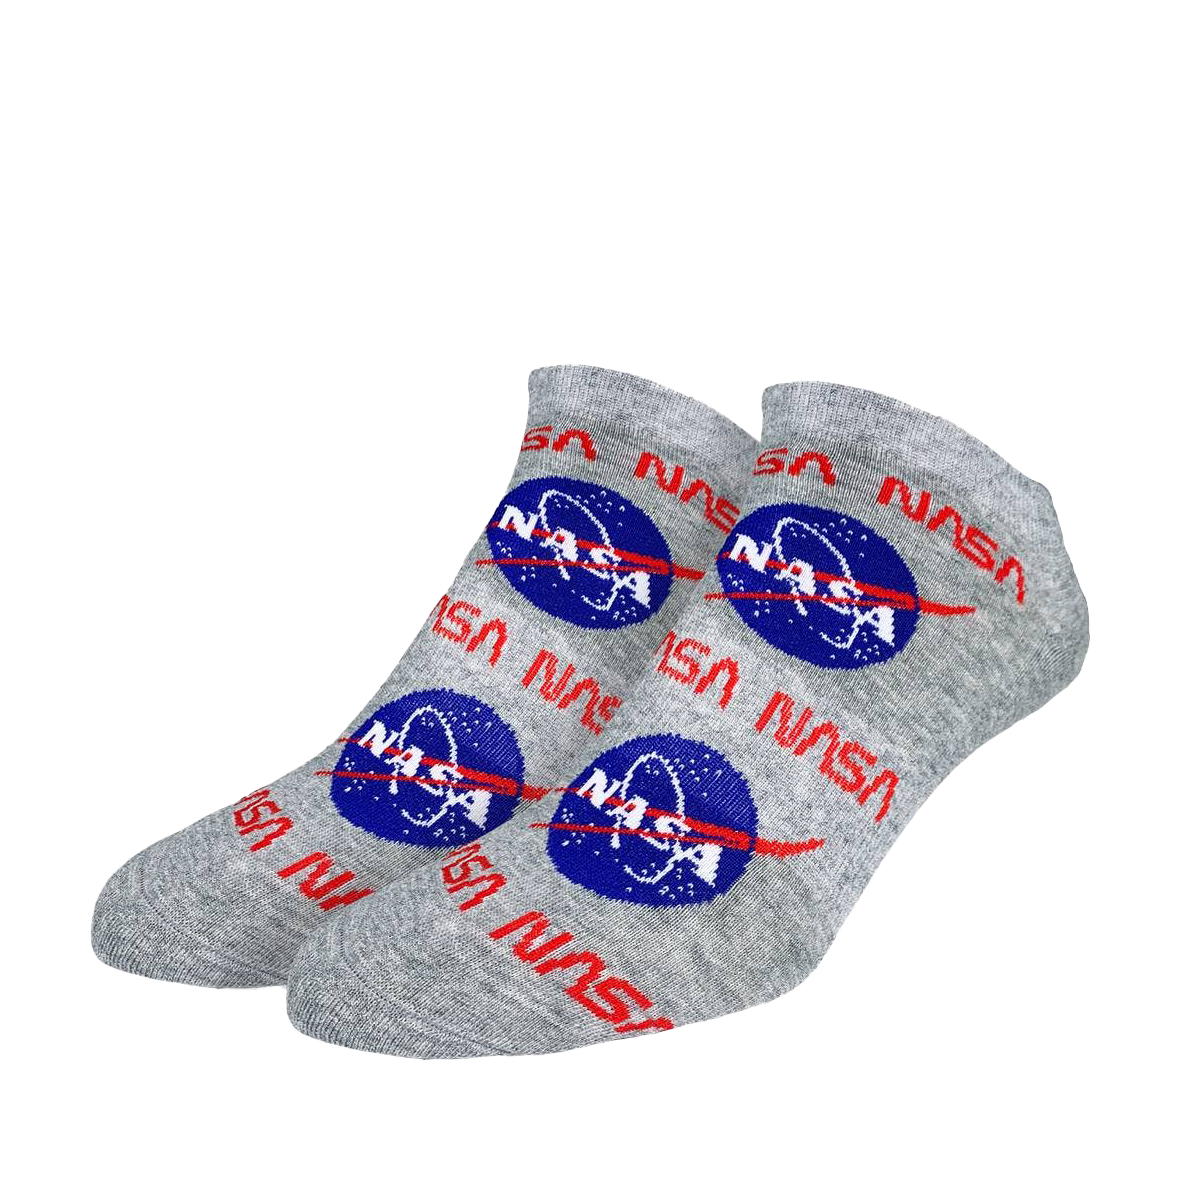 NASA Socks - Ankle